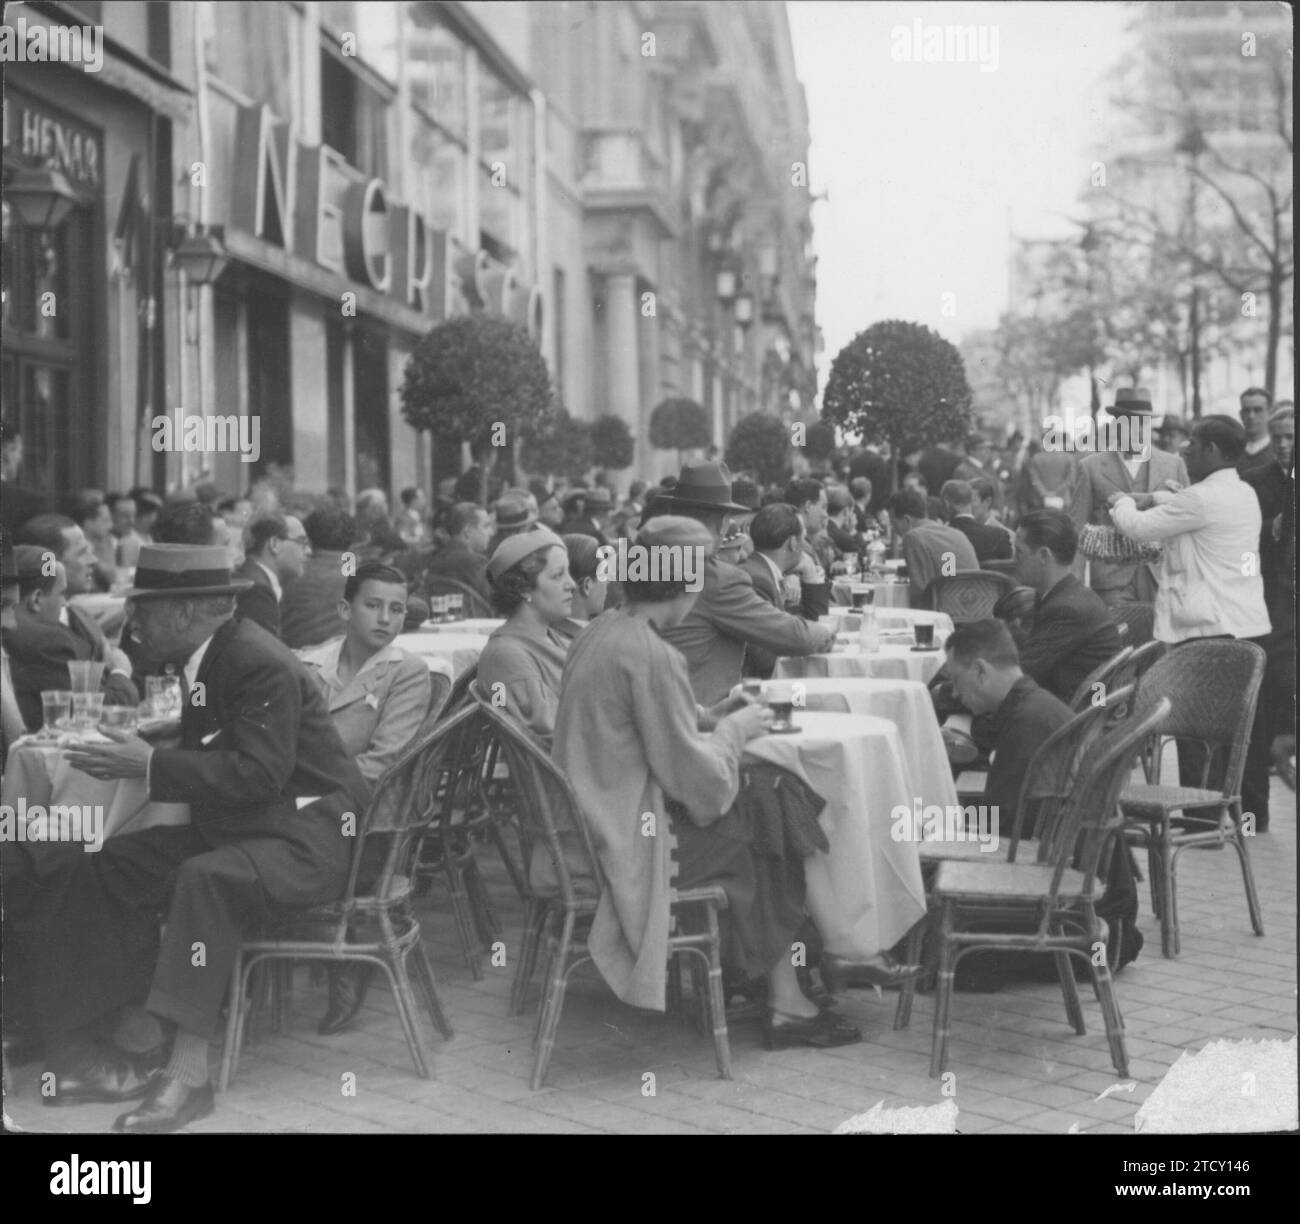 Madrid, 1 mai 1935. La terrasse de la Granja del Henar, adjacente à celle de Negresco. Deux des cafés les plus emblématiques de Madrid, au milieu de la rue Alcalá, avec des rassemblements très populaires, les deux. Crédit : Album / Archivo ABC Banque D'Images